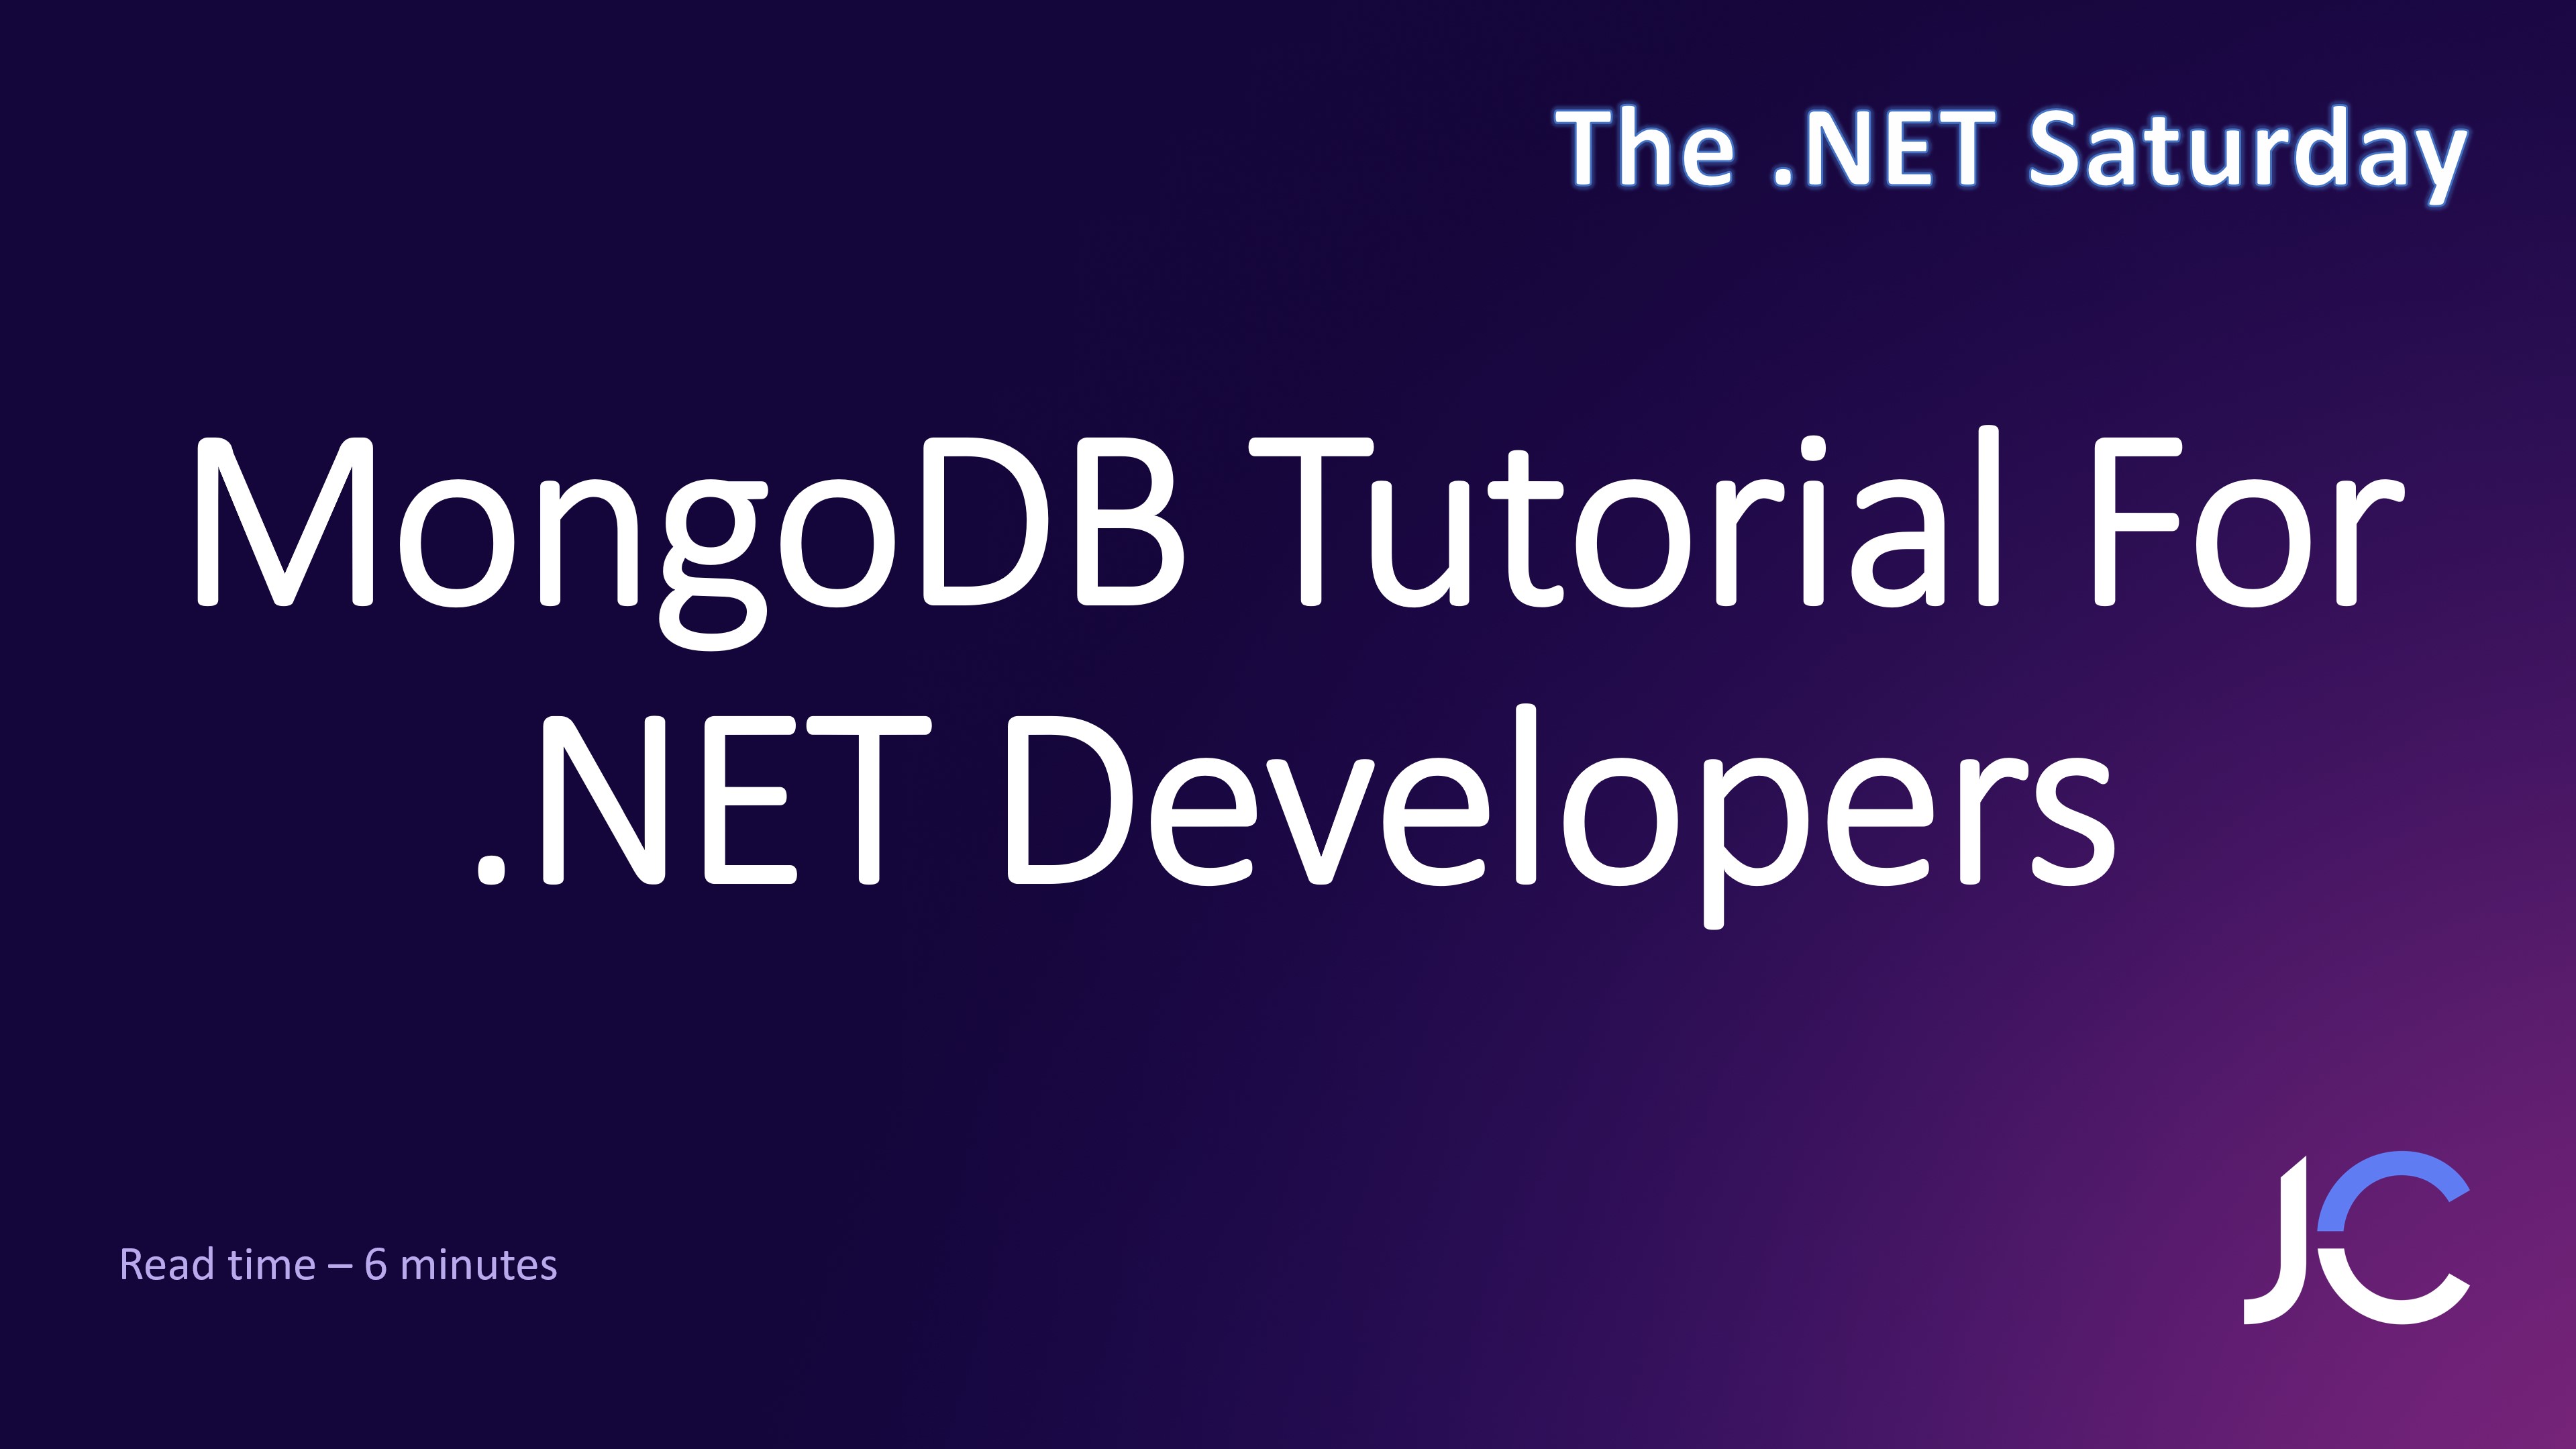 MongoDB Tutorial For .NET Developers